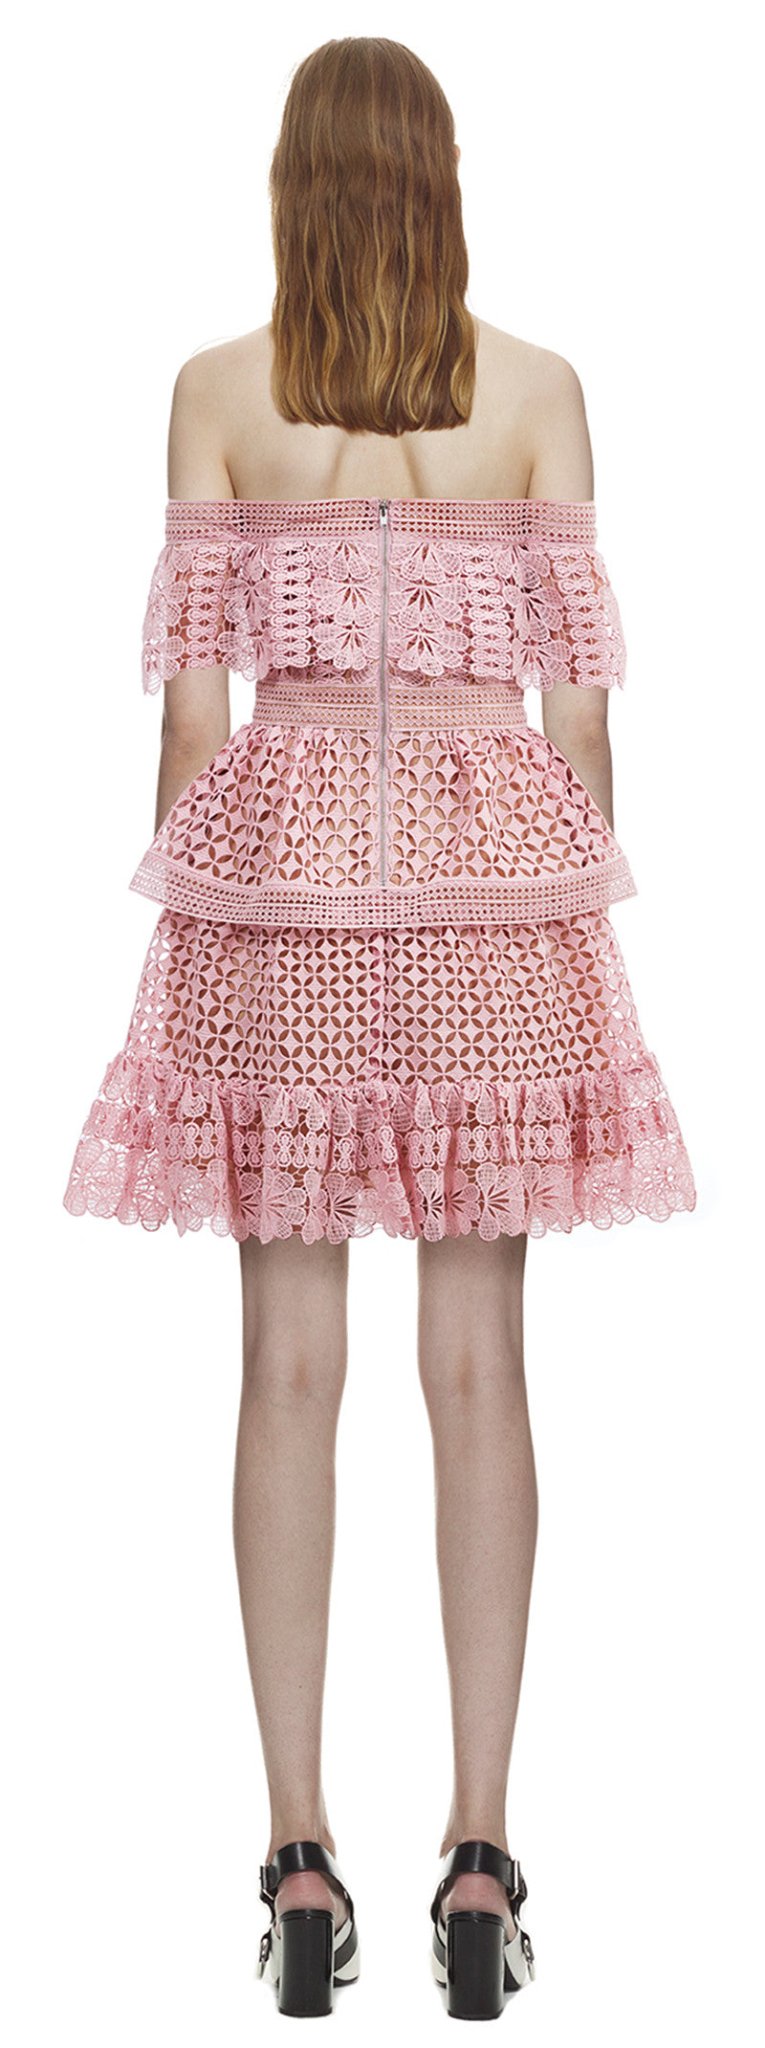 Multi Layer Cotton Lace Mini Dress | Private Label Styles